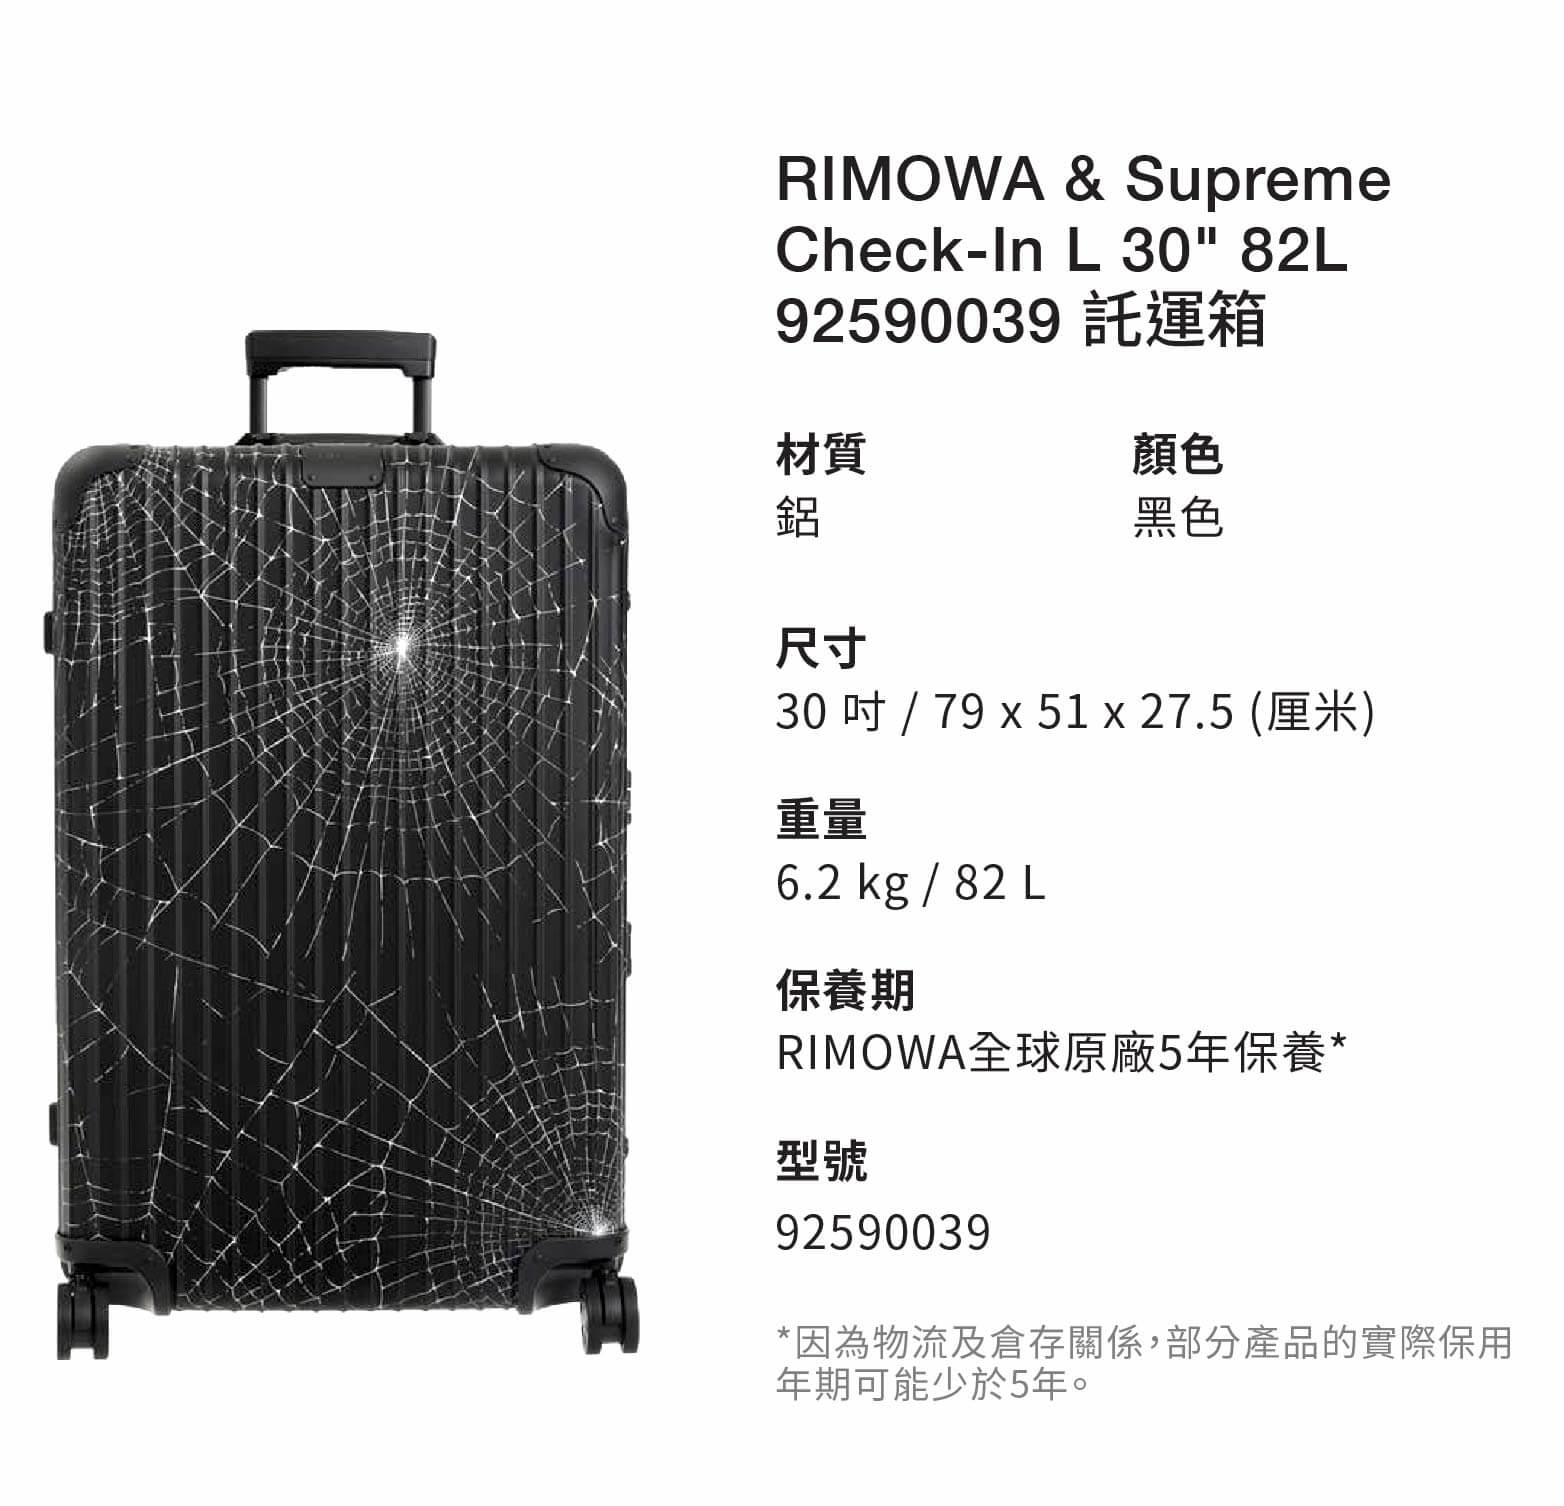 RIMOWA & Supreme Check-In L 30